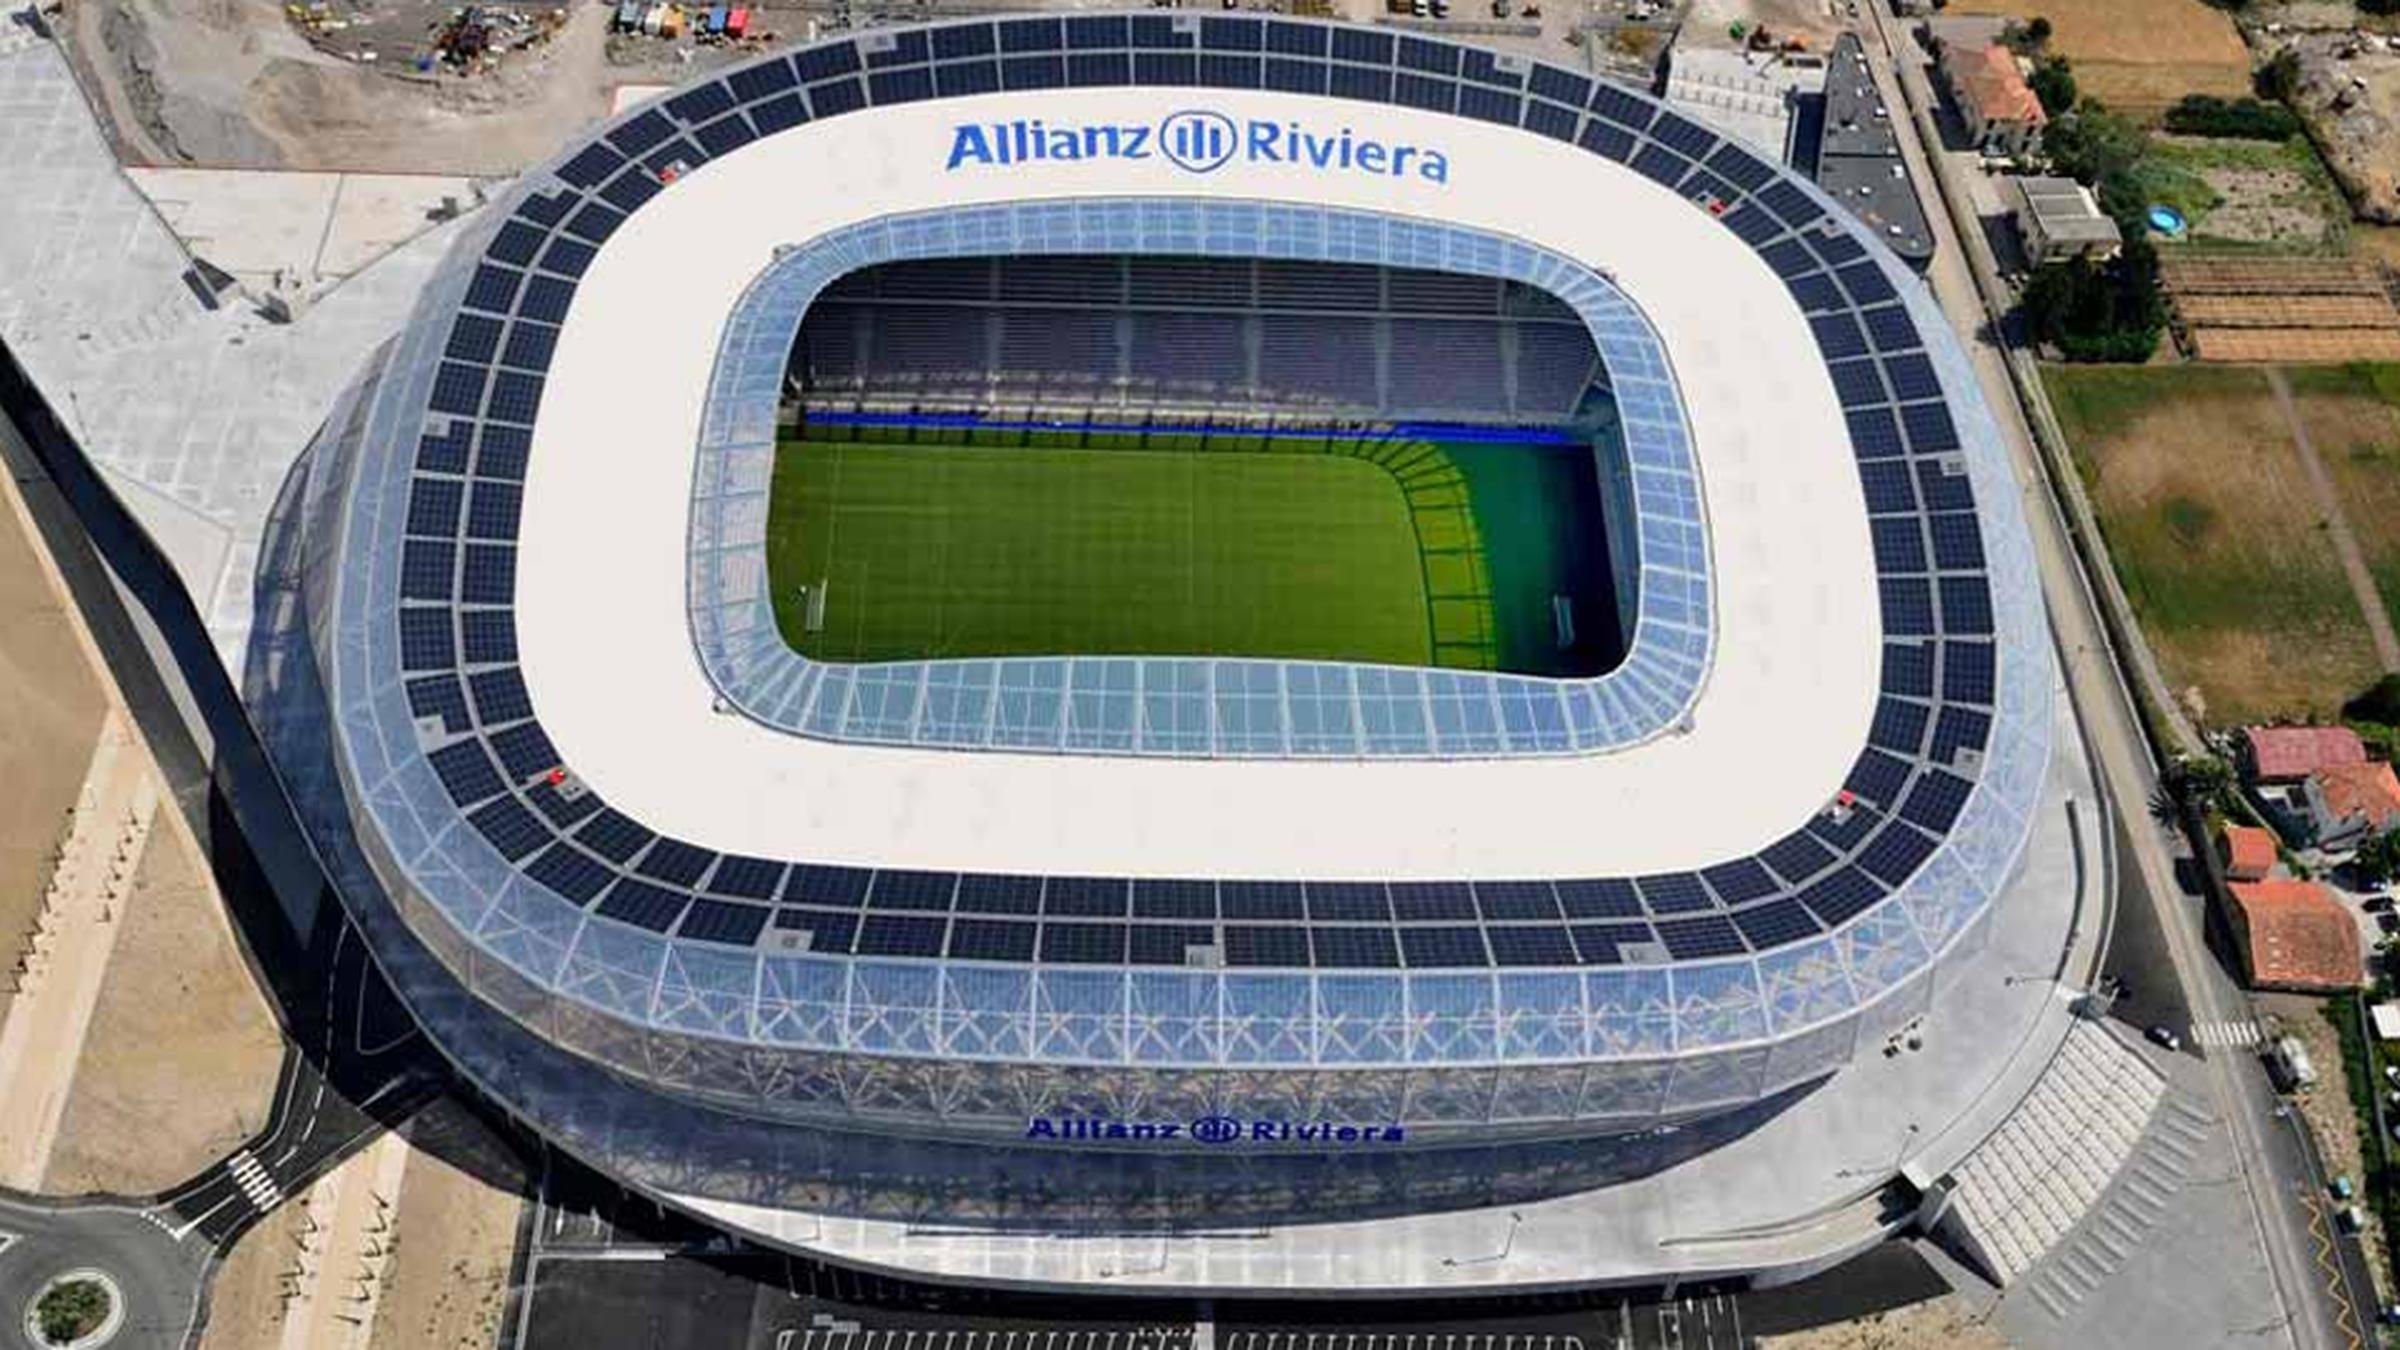 General Information About The Stadium Allianz Riviera